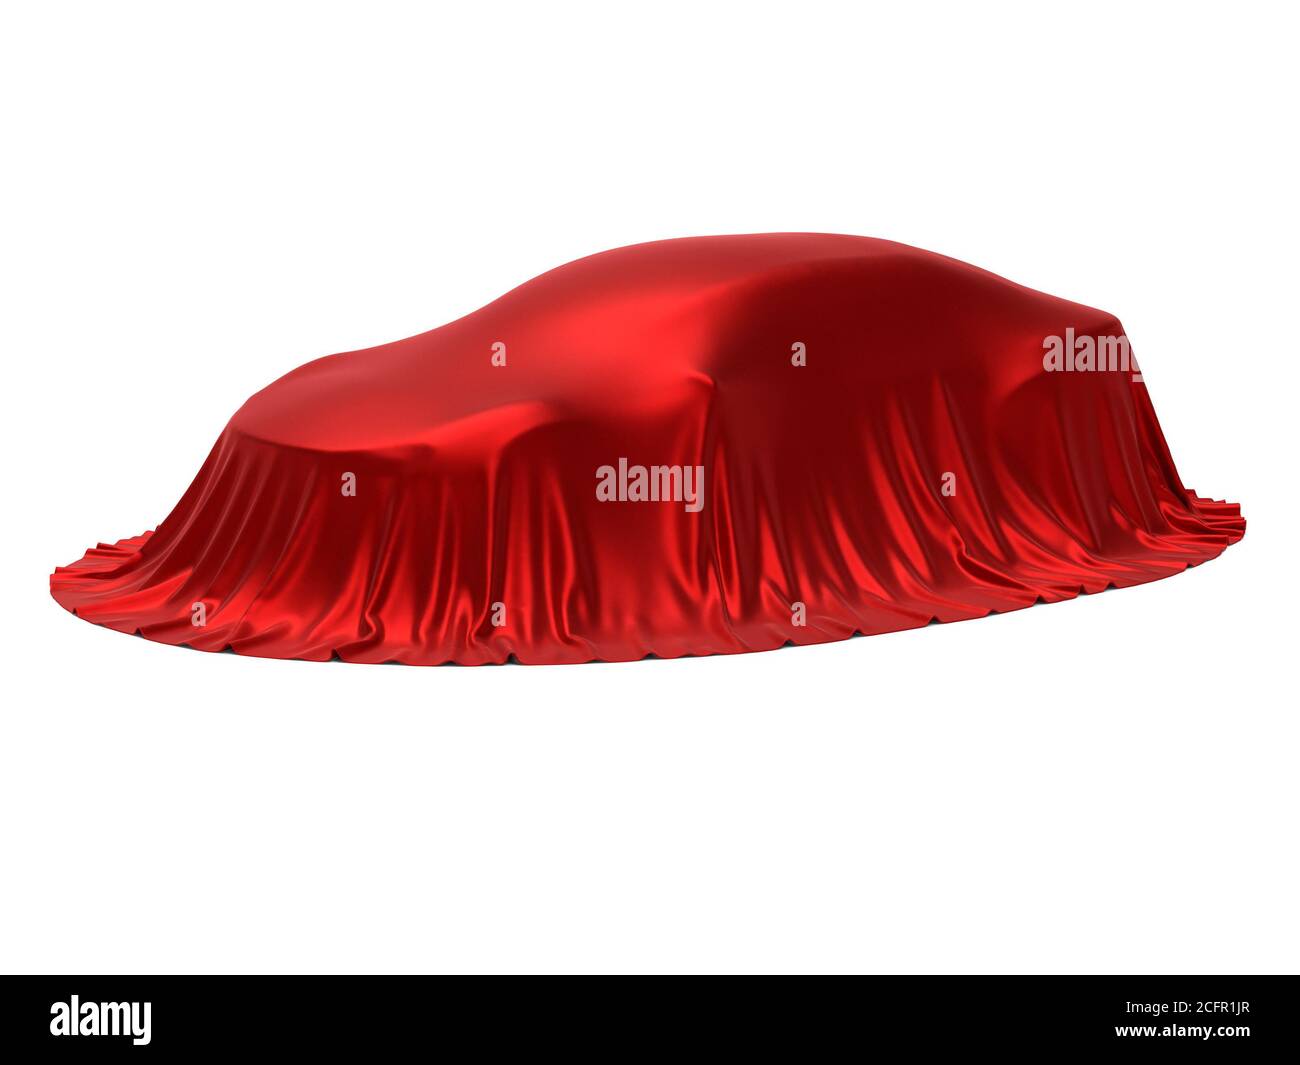 Présentation de la nouvelle voiture, présentation du modèle, caché sous une couverture rouge, isolé sur fond blanc, rendu 3d Banque D'Images